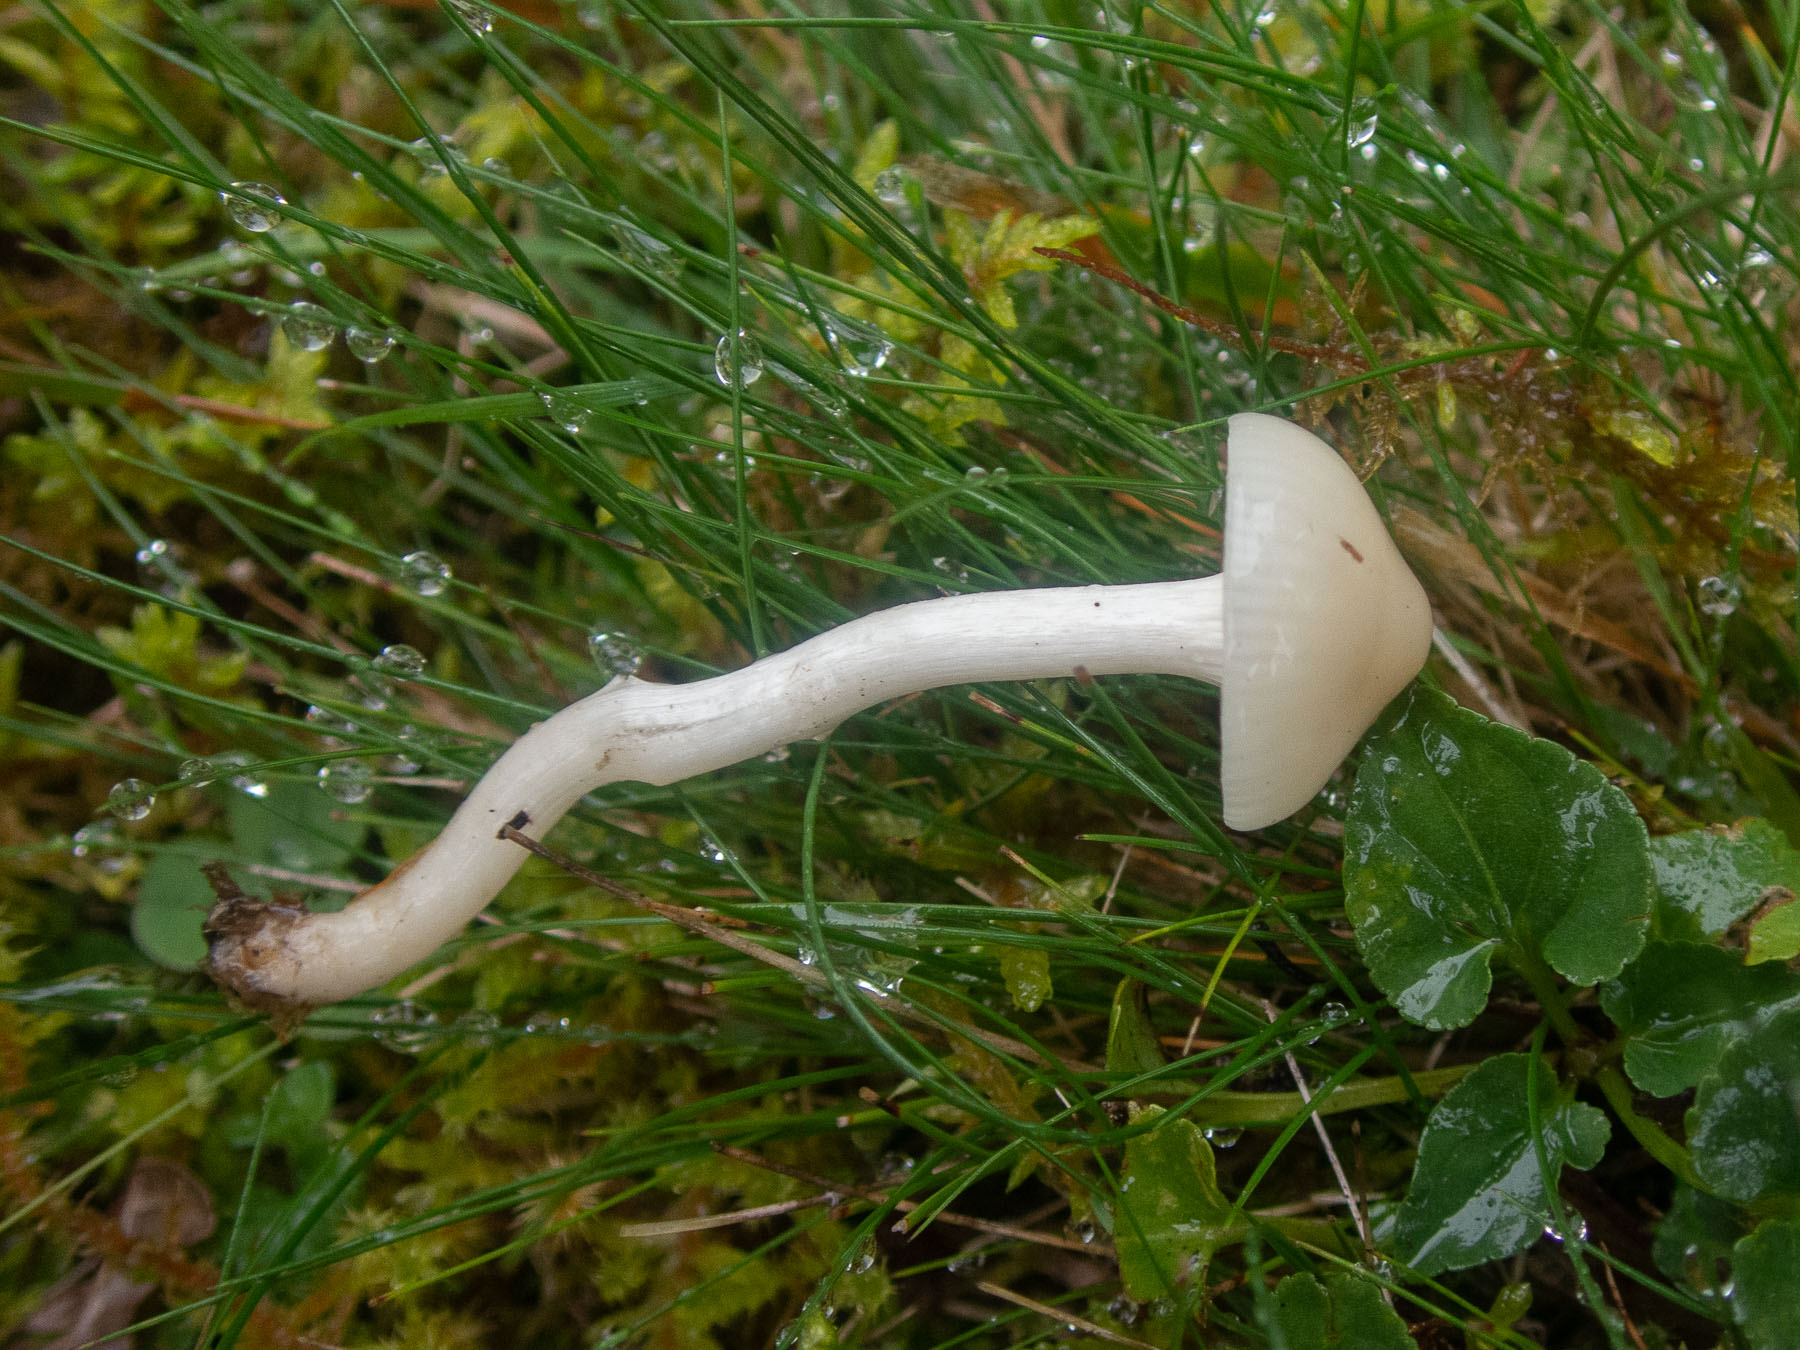 Гигрофор девичий (Cuphophyllus virgineus)Гигрофор девичий (Cuphophyllus virgineus) на лесной просеке, Стокгольм, октябрь 2020 года. Автор фото: Сутормина Марина